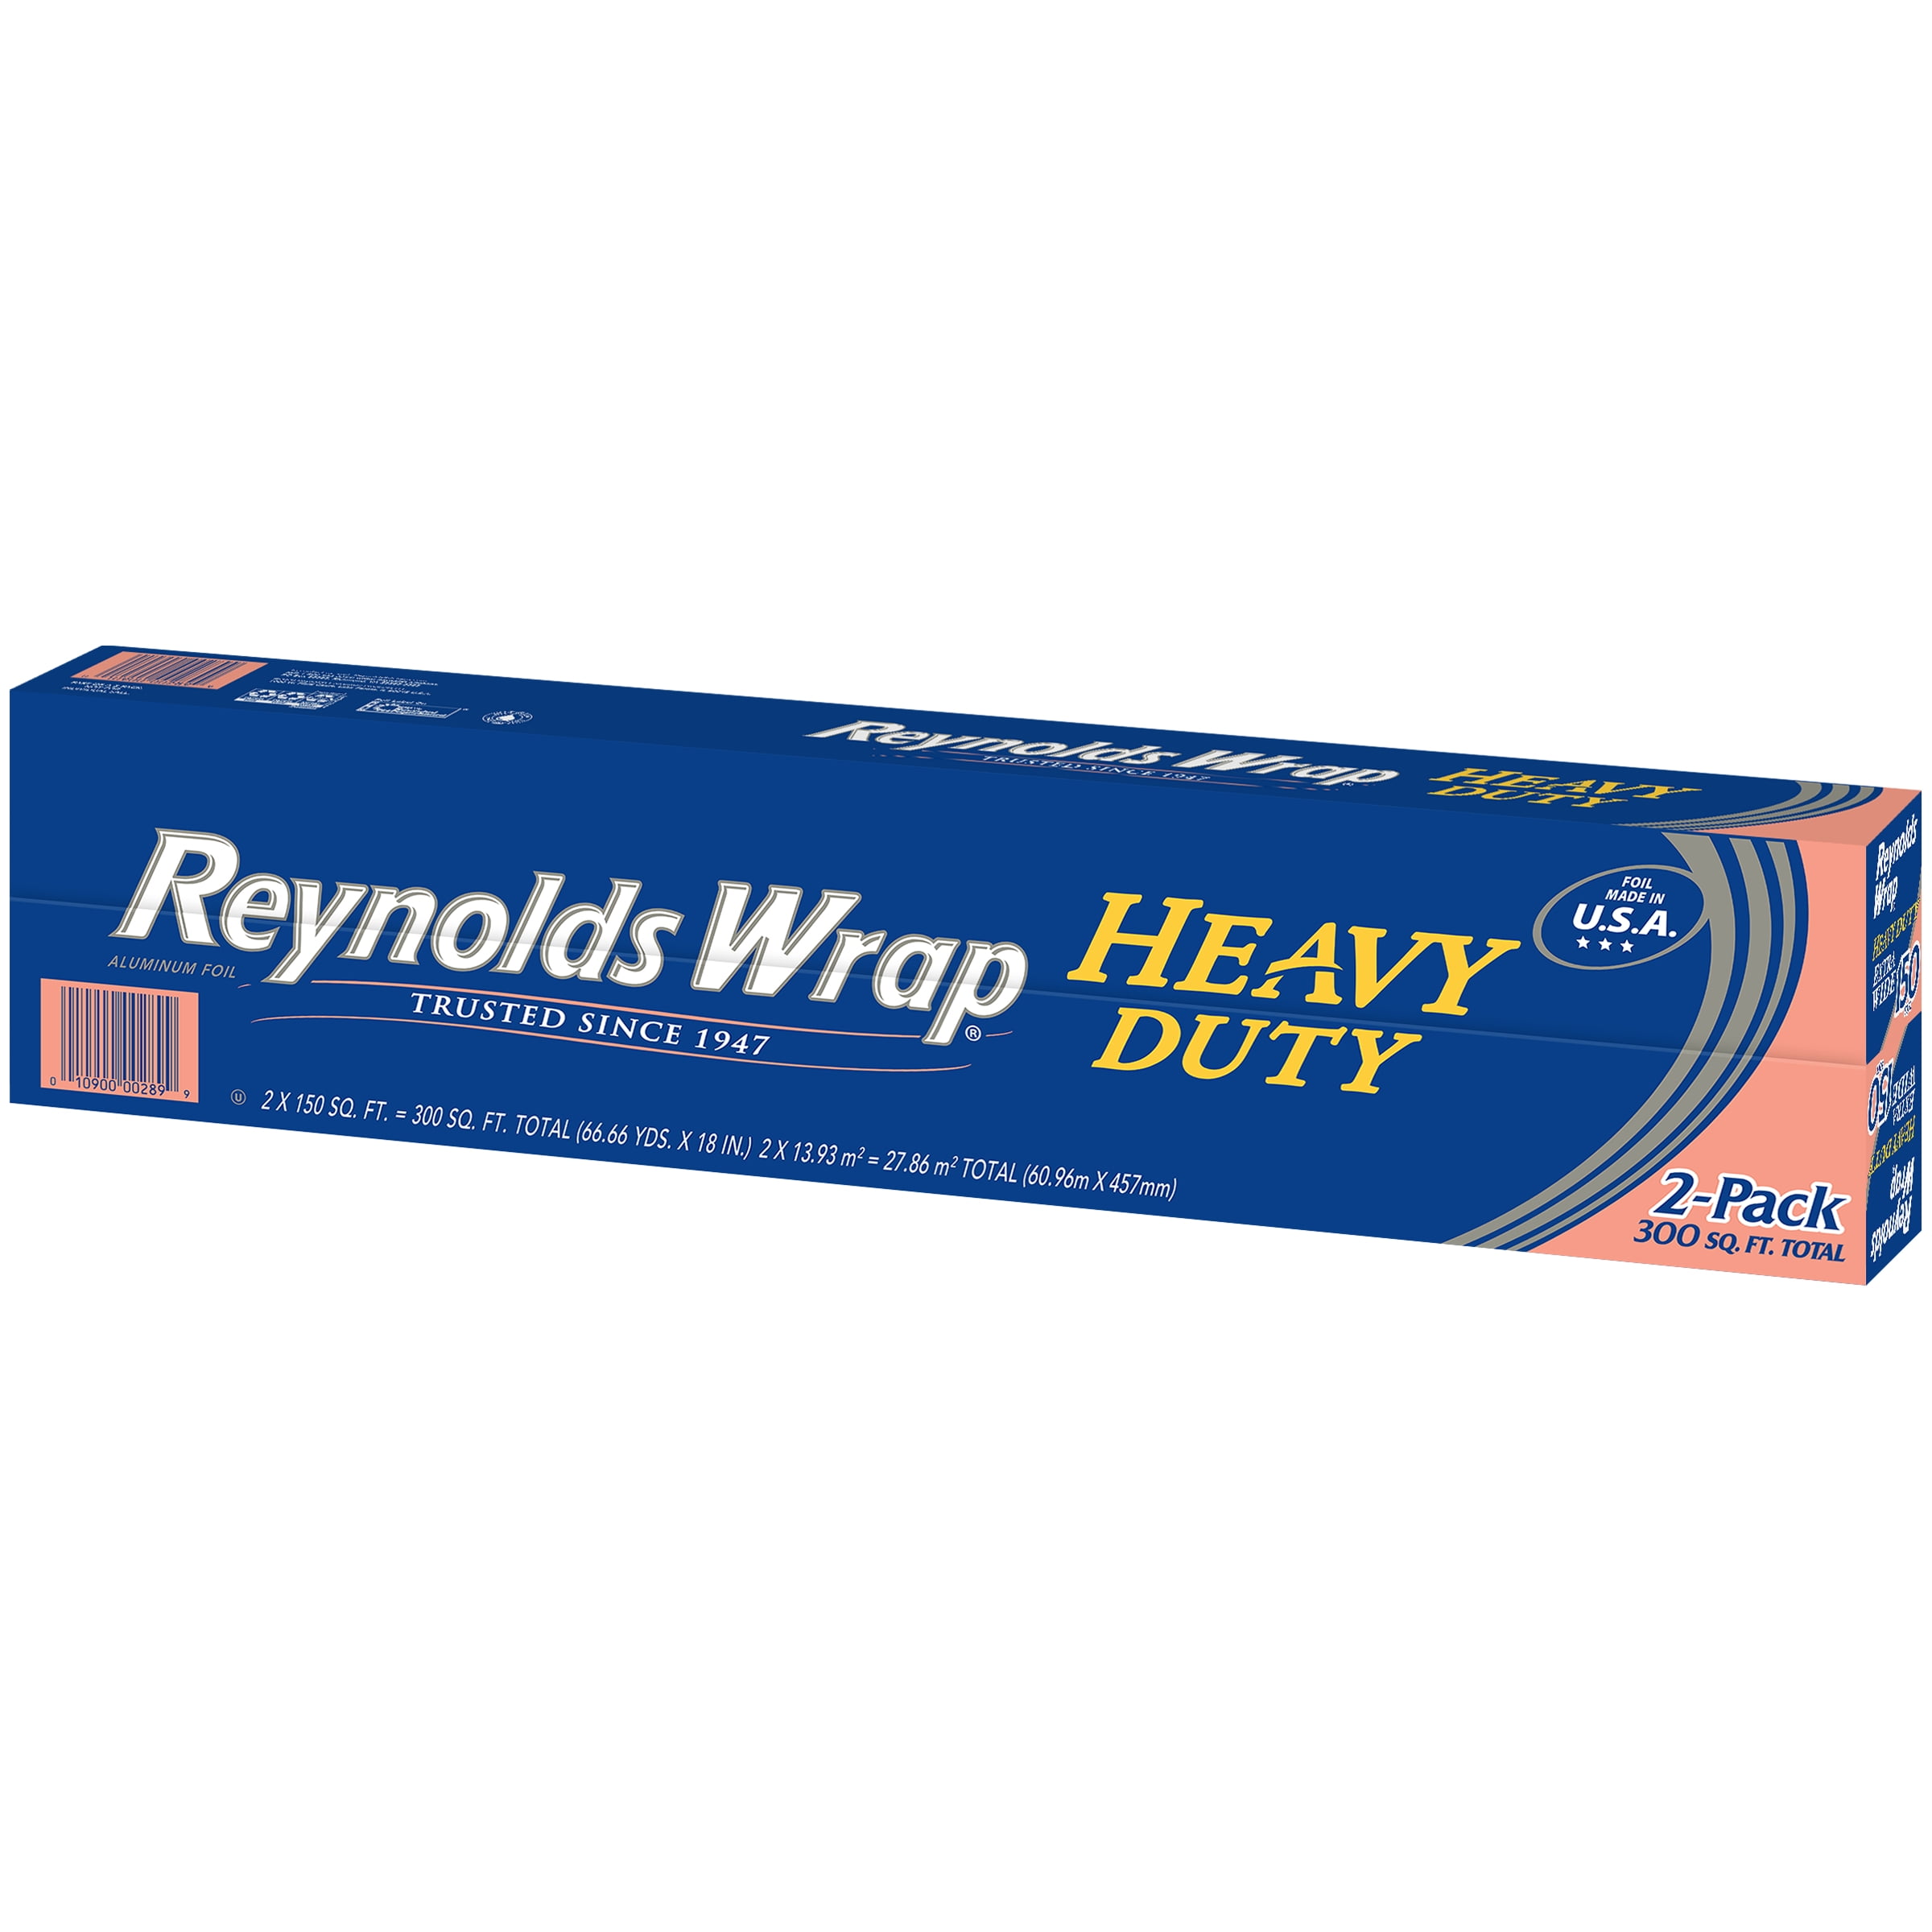 Reynolds Wrap Heavy Duty Non-Stick Aluminum Foil, 35 sq ft - City